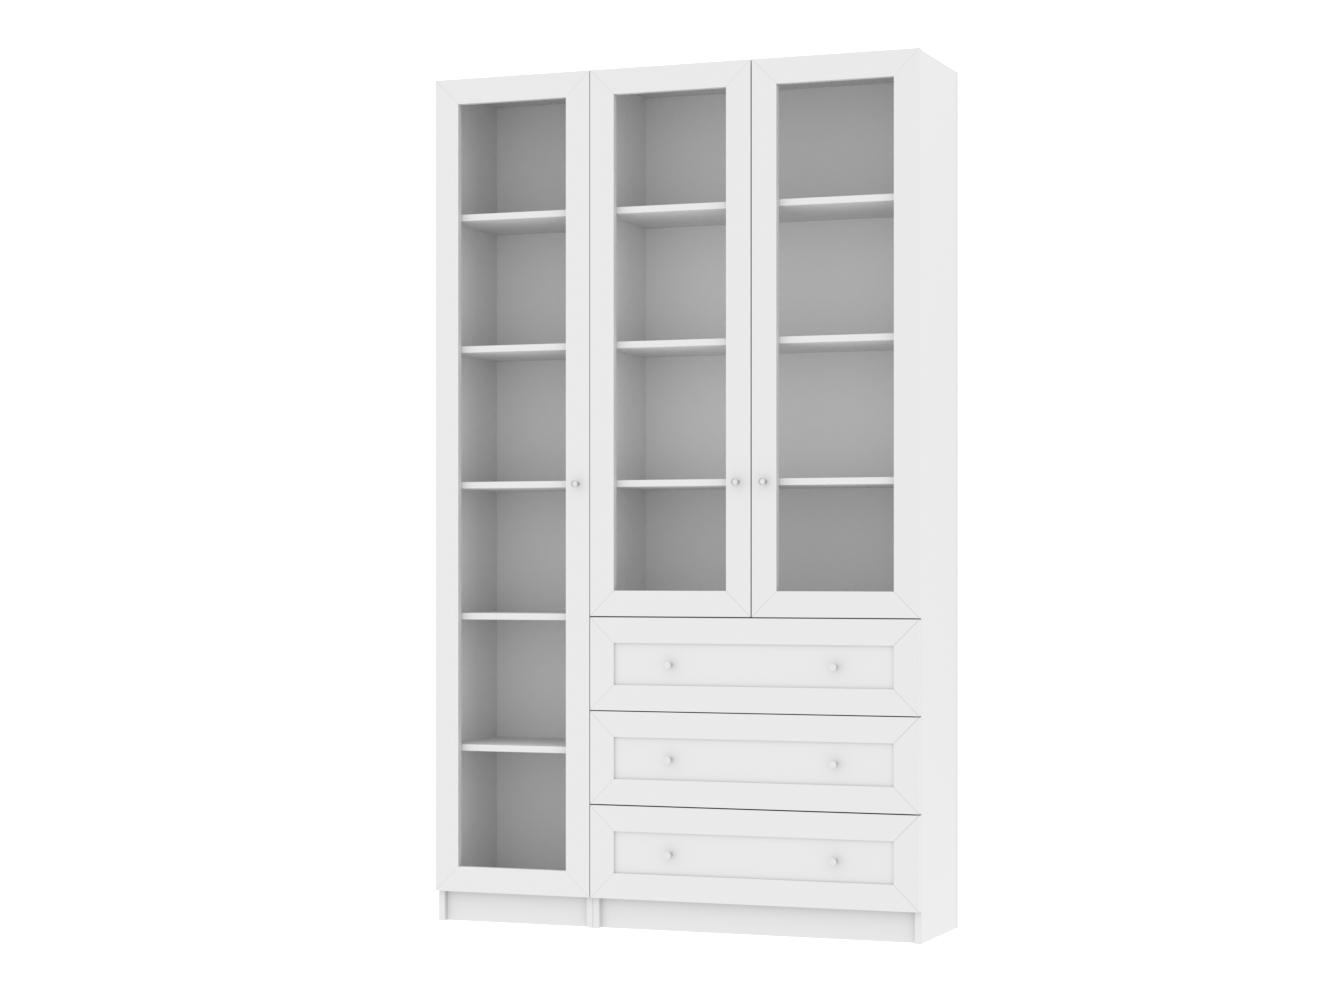 Изображение товара Книжный шкаф Билли 359 white ИКЕА (IKEA), 120x30x202 см на сайте adeta.ru